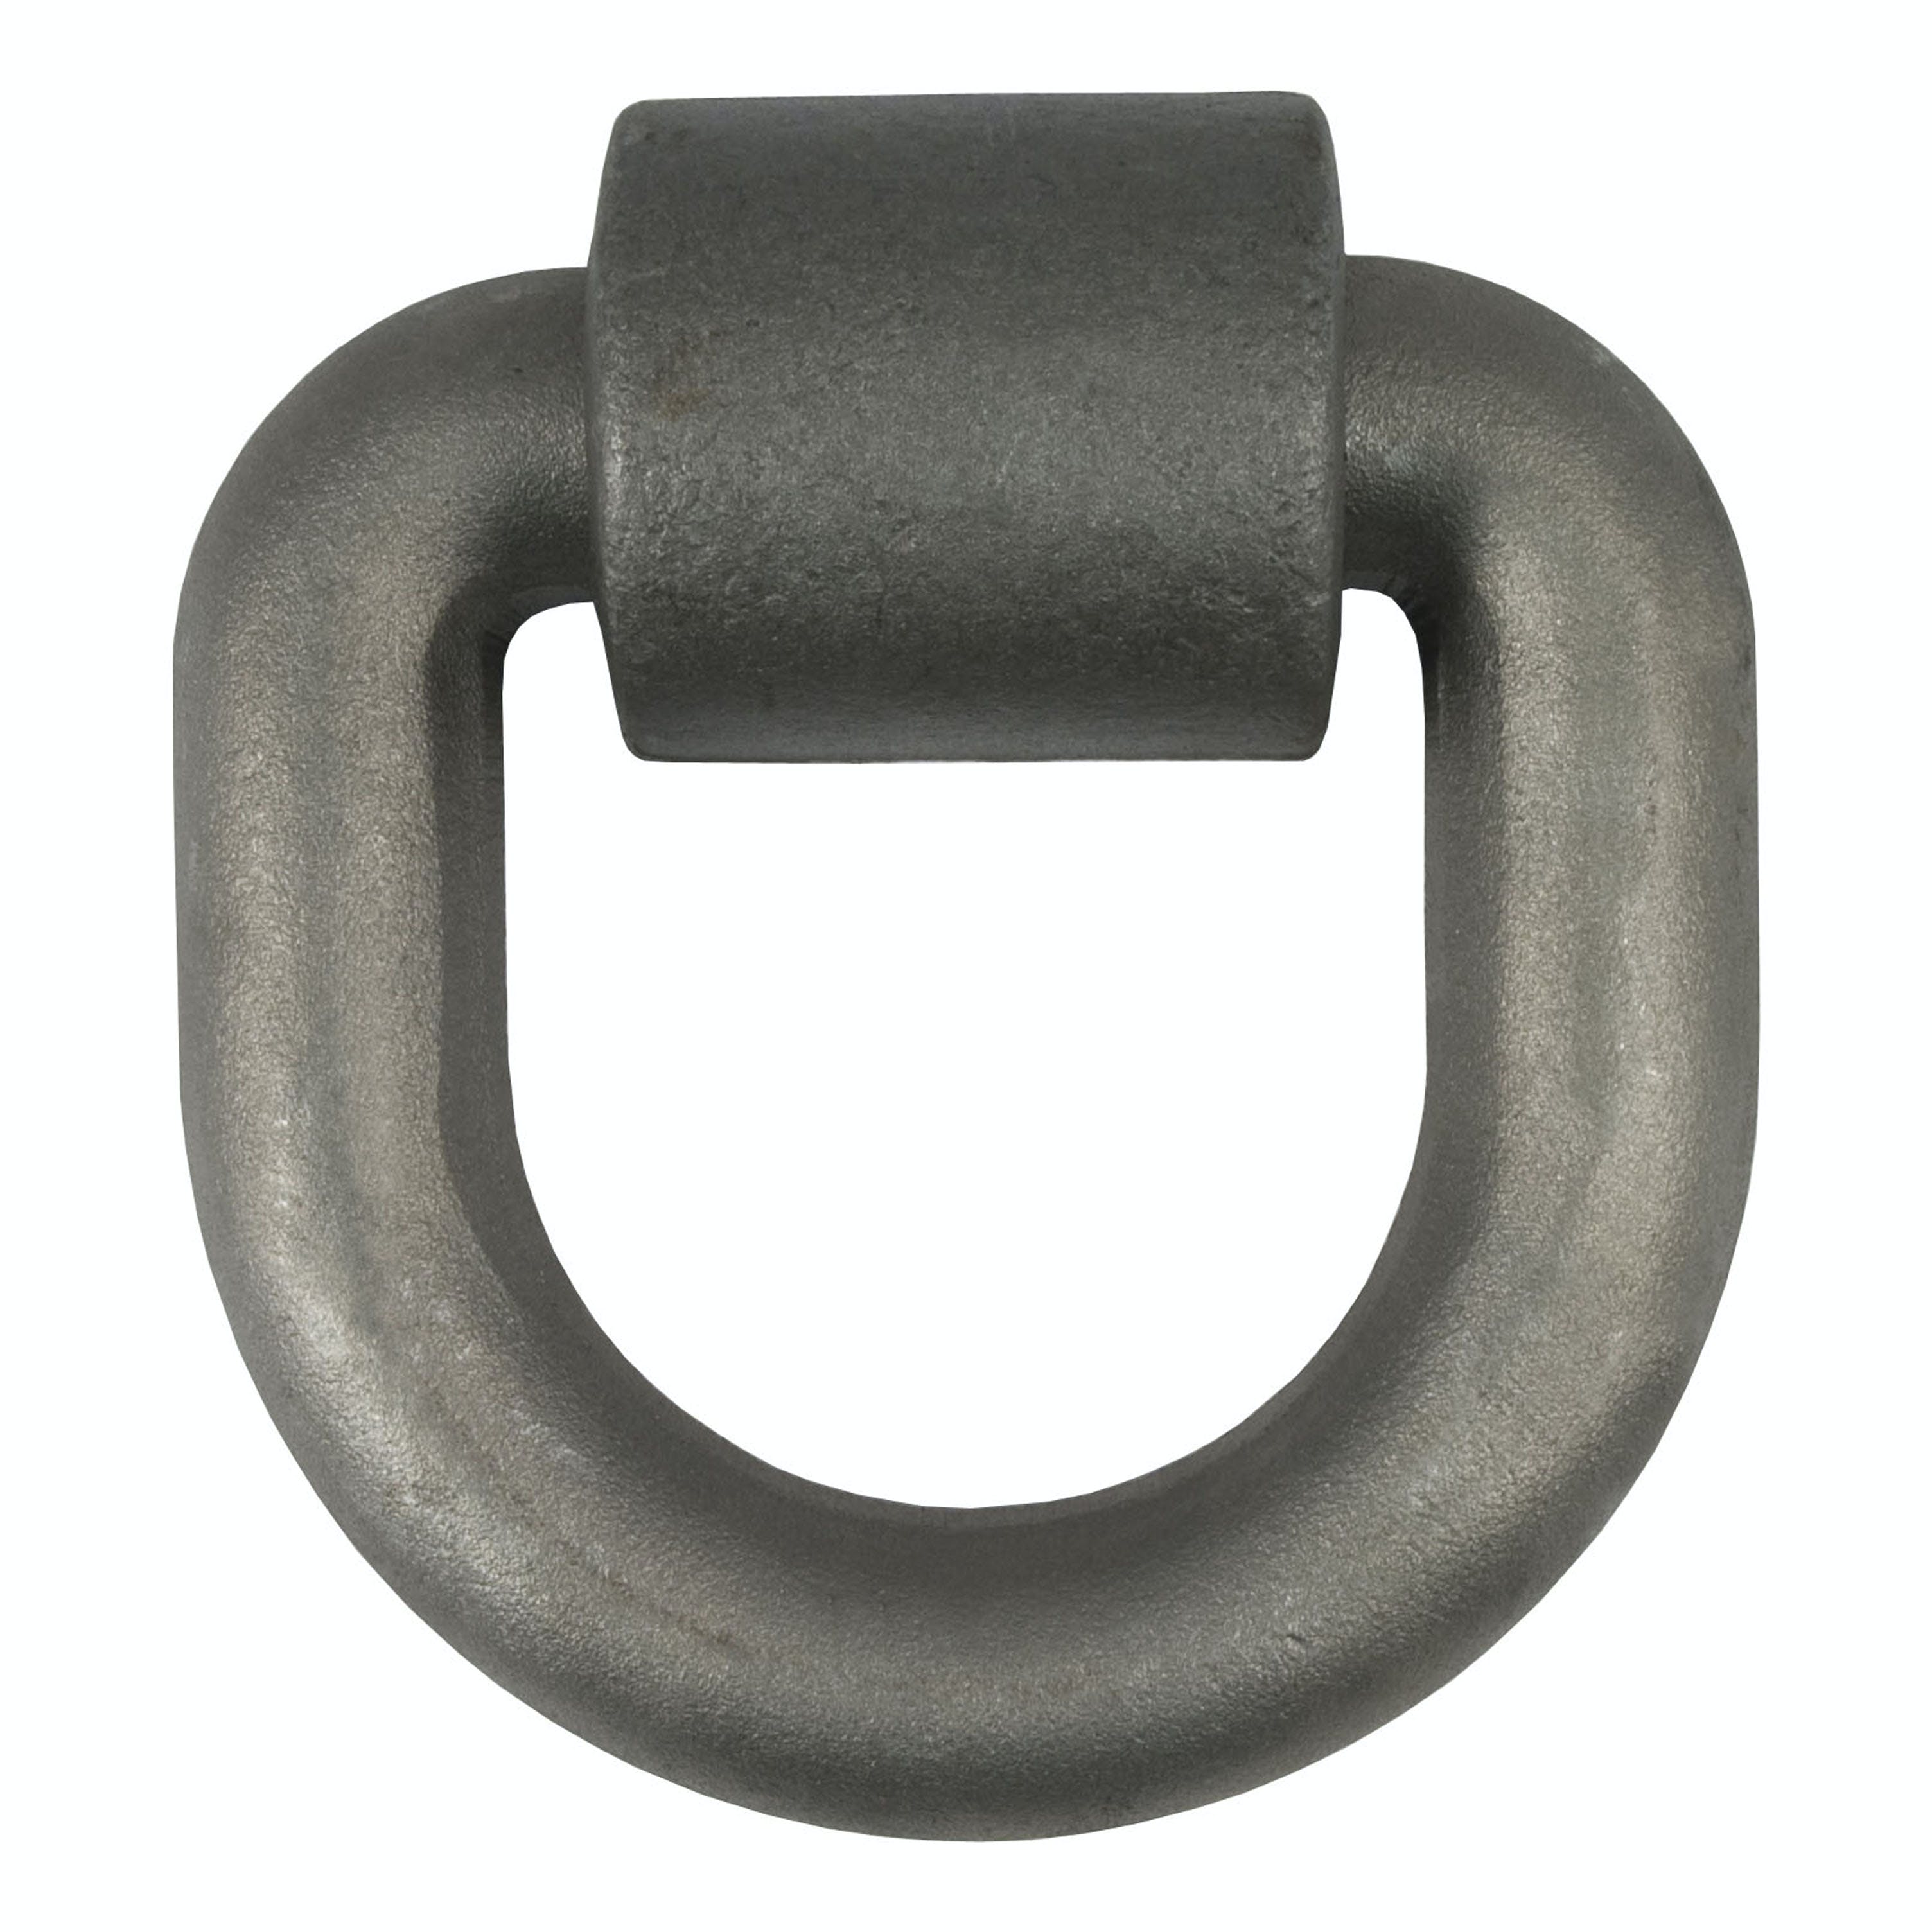 CURT 83770 3x 3 Weld-On Tie-Down D-Ring (15,587 lbs, Raw Steel)